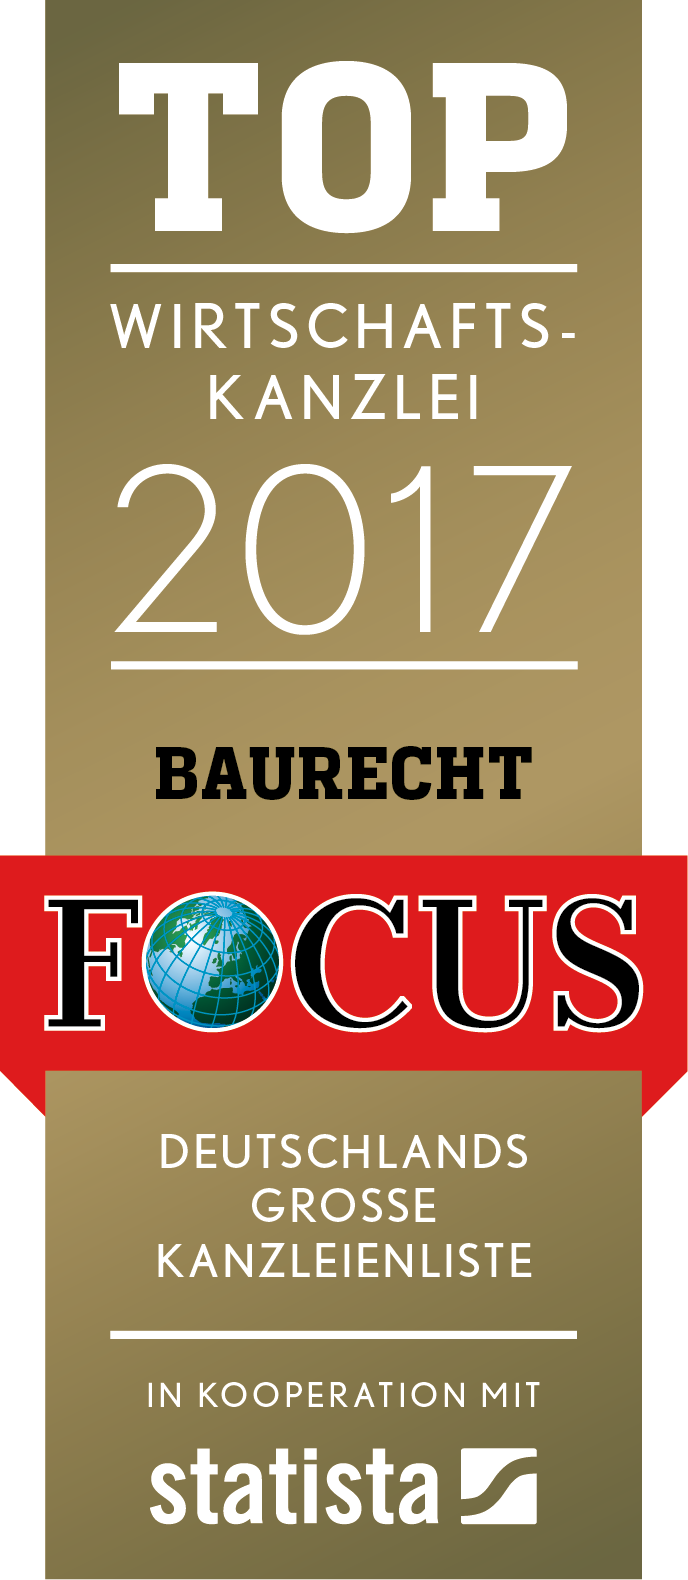 FCS_TOP_Wirtschaftskanzlei_2017_Baurecht.png - 105,82 kB